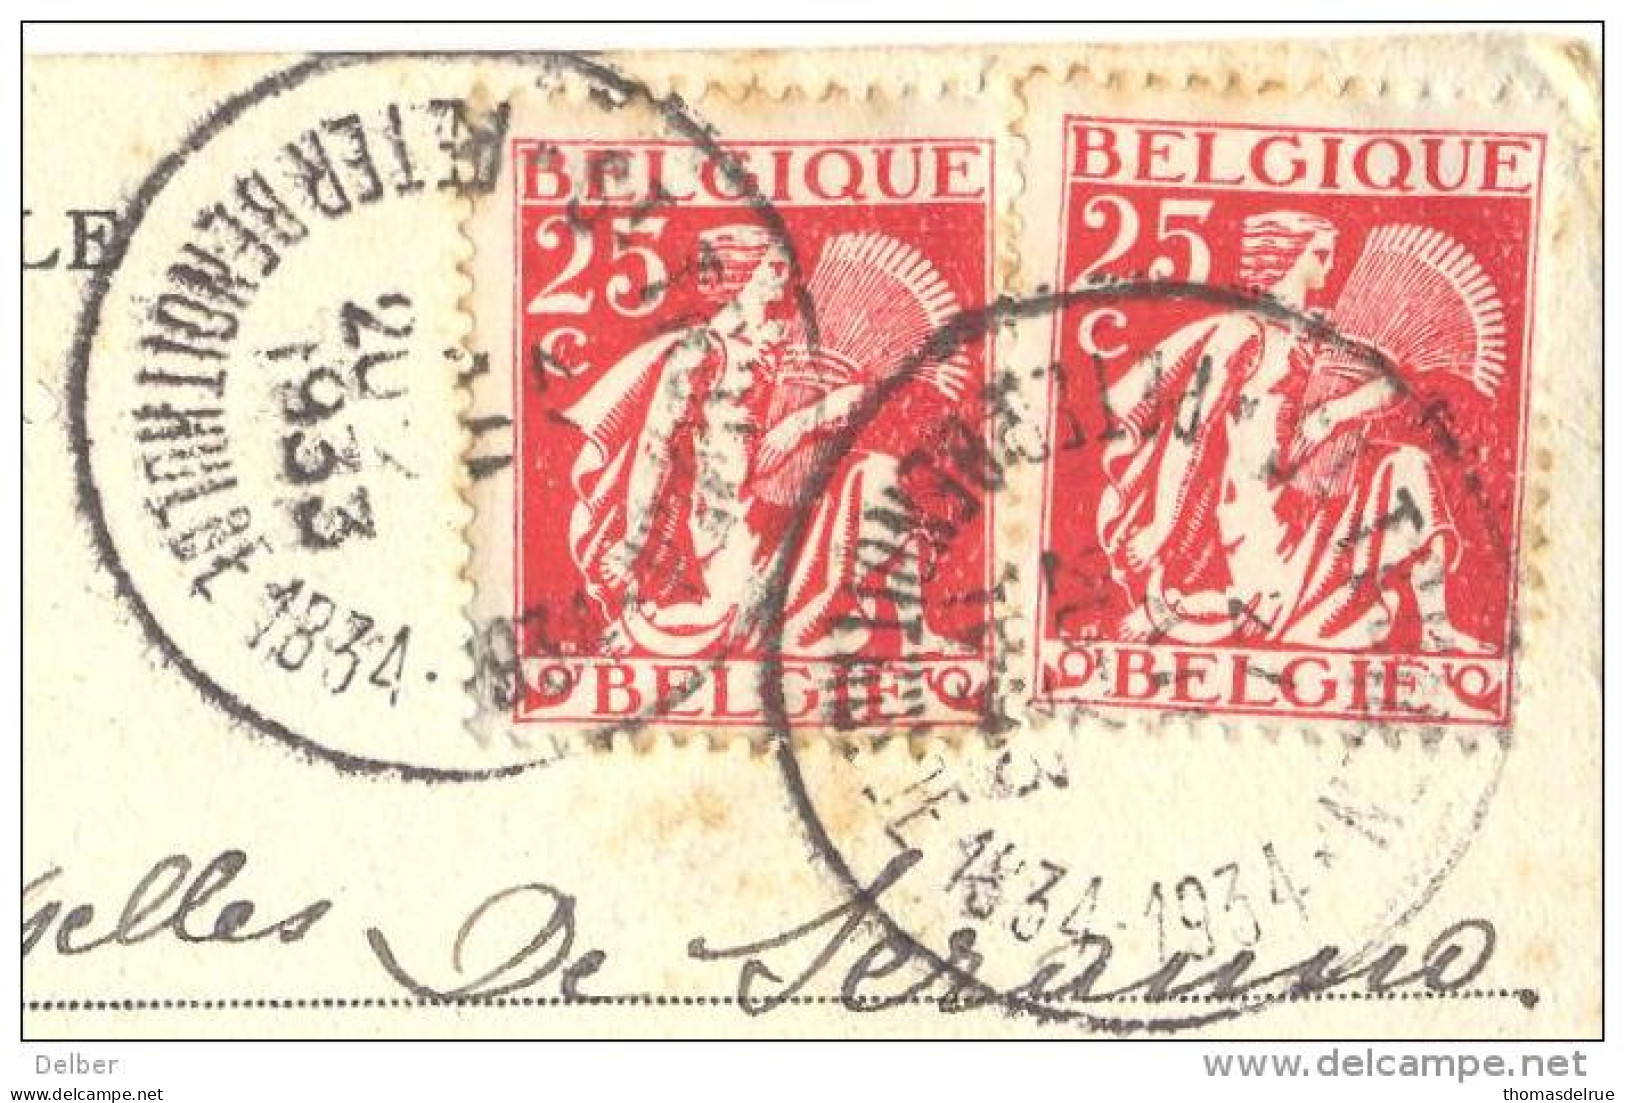 _ik174: N° 339+339::ST-TRUIDEN PETER BENOITHULDE 1834-1934... Op Fantasie Kaartje Met Verknipte Postzegels..HOUYOUX... - 1932 Ceres And Mercurius